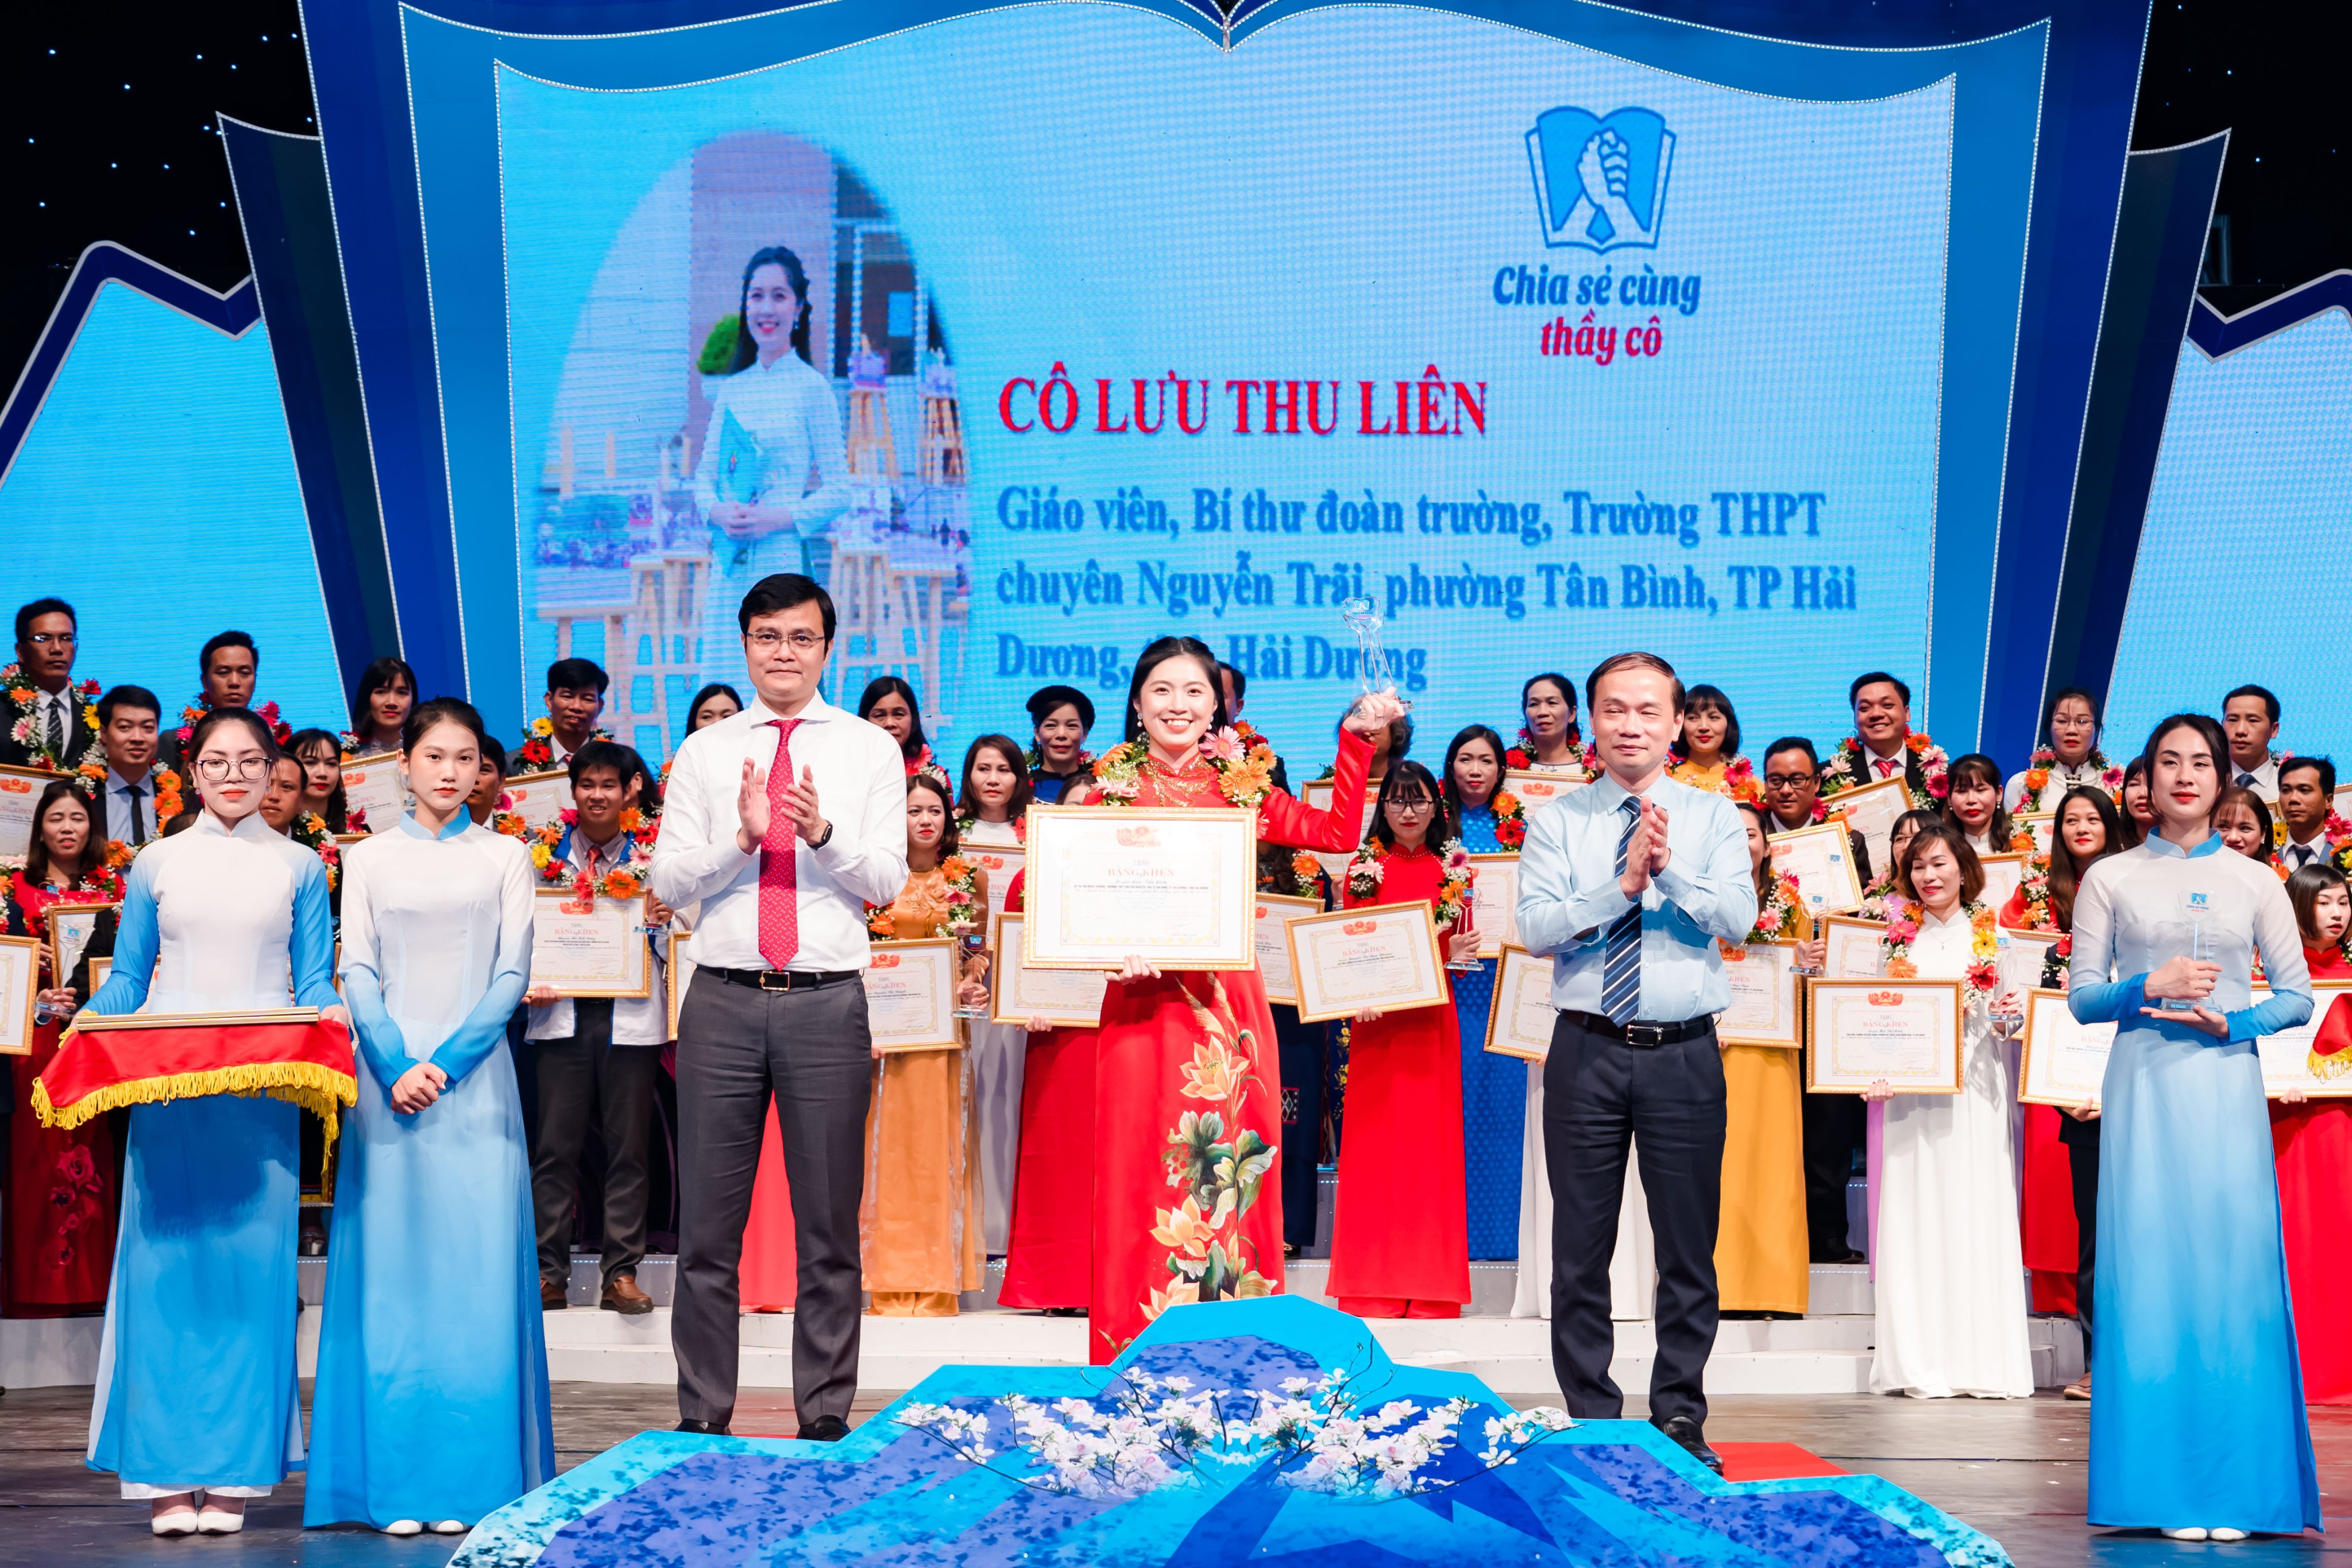 Cô Lưu Thu Liên - Bí thư Đoàn trường THPT Chuyên Nguyễn Trãi được vinh danh tại Chương trình “Chia sẻ cùng thầy cô” năm 2022